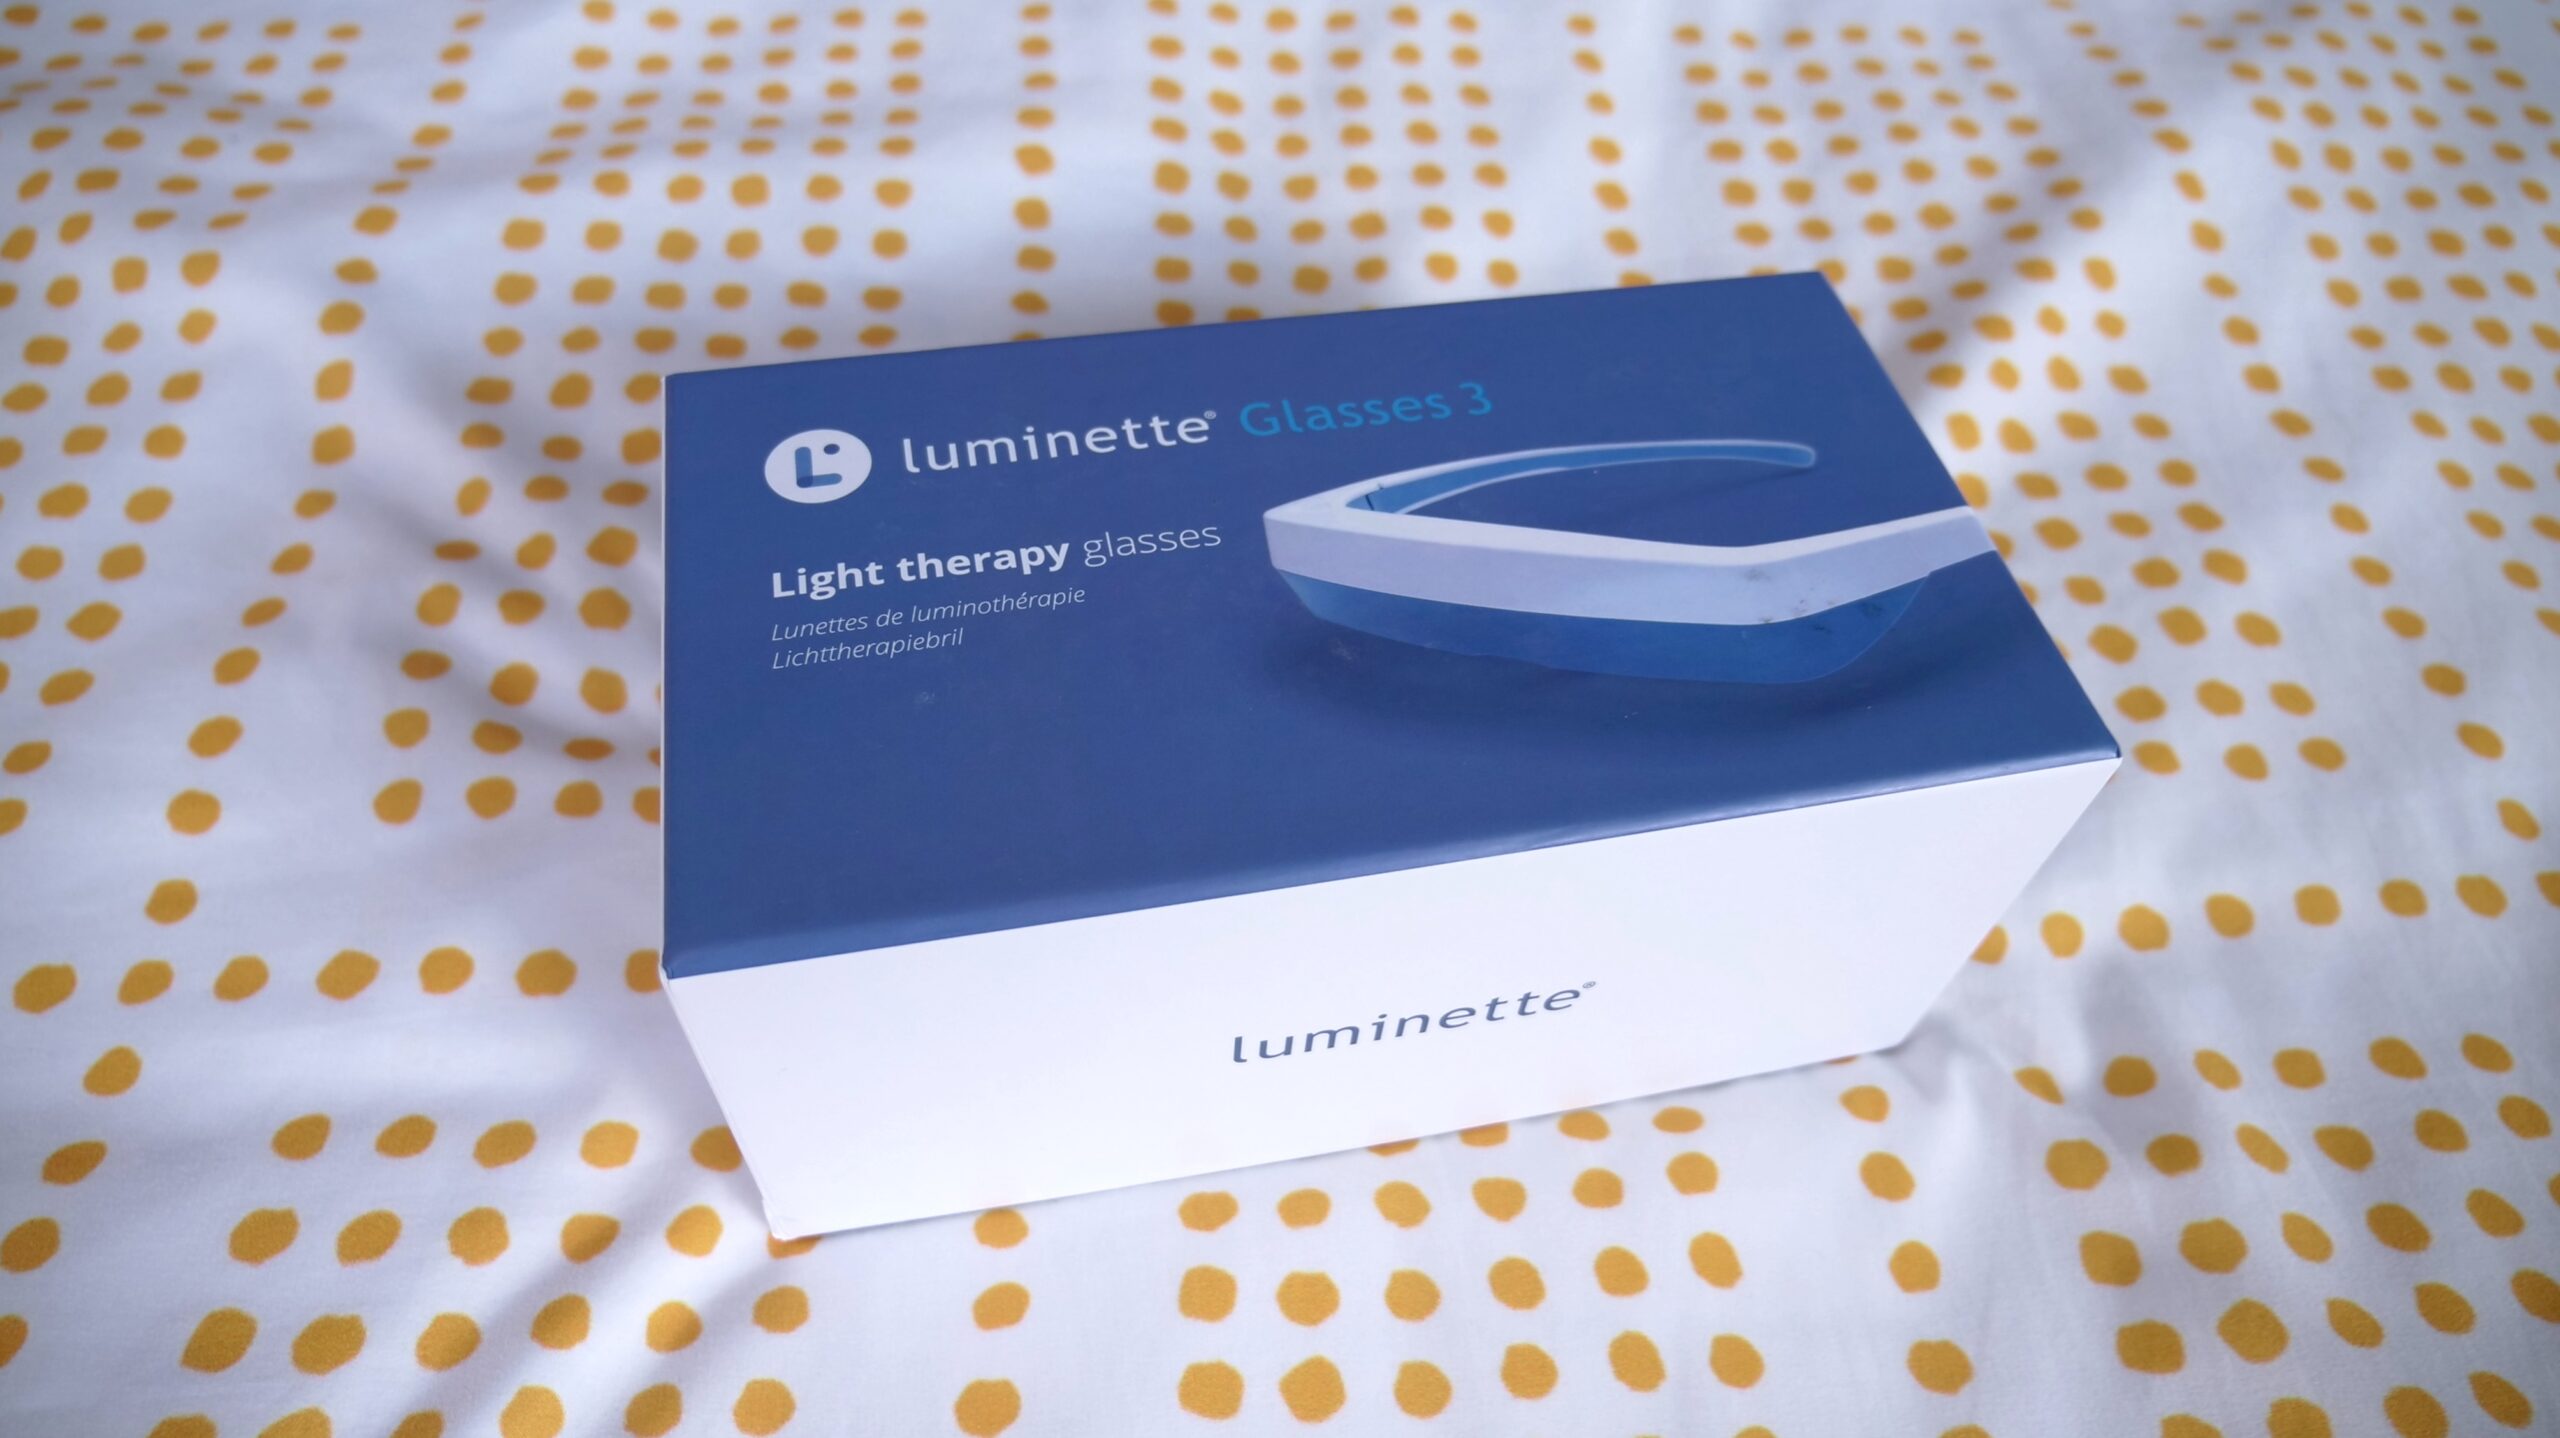 Luminette® 3 - Lunettes de luminothérapie 